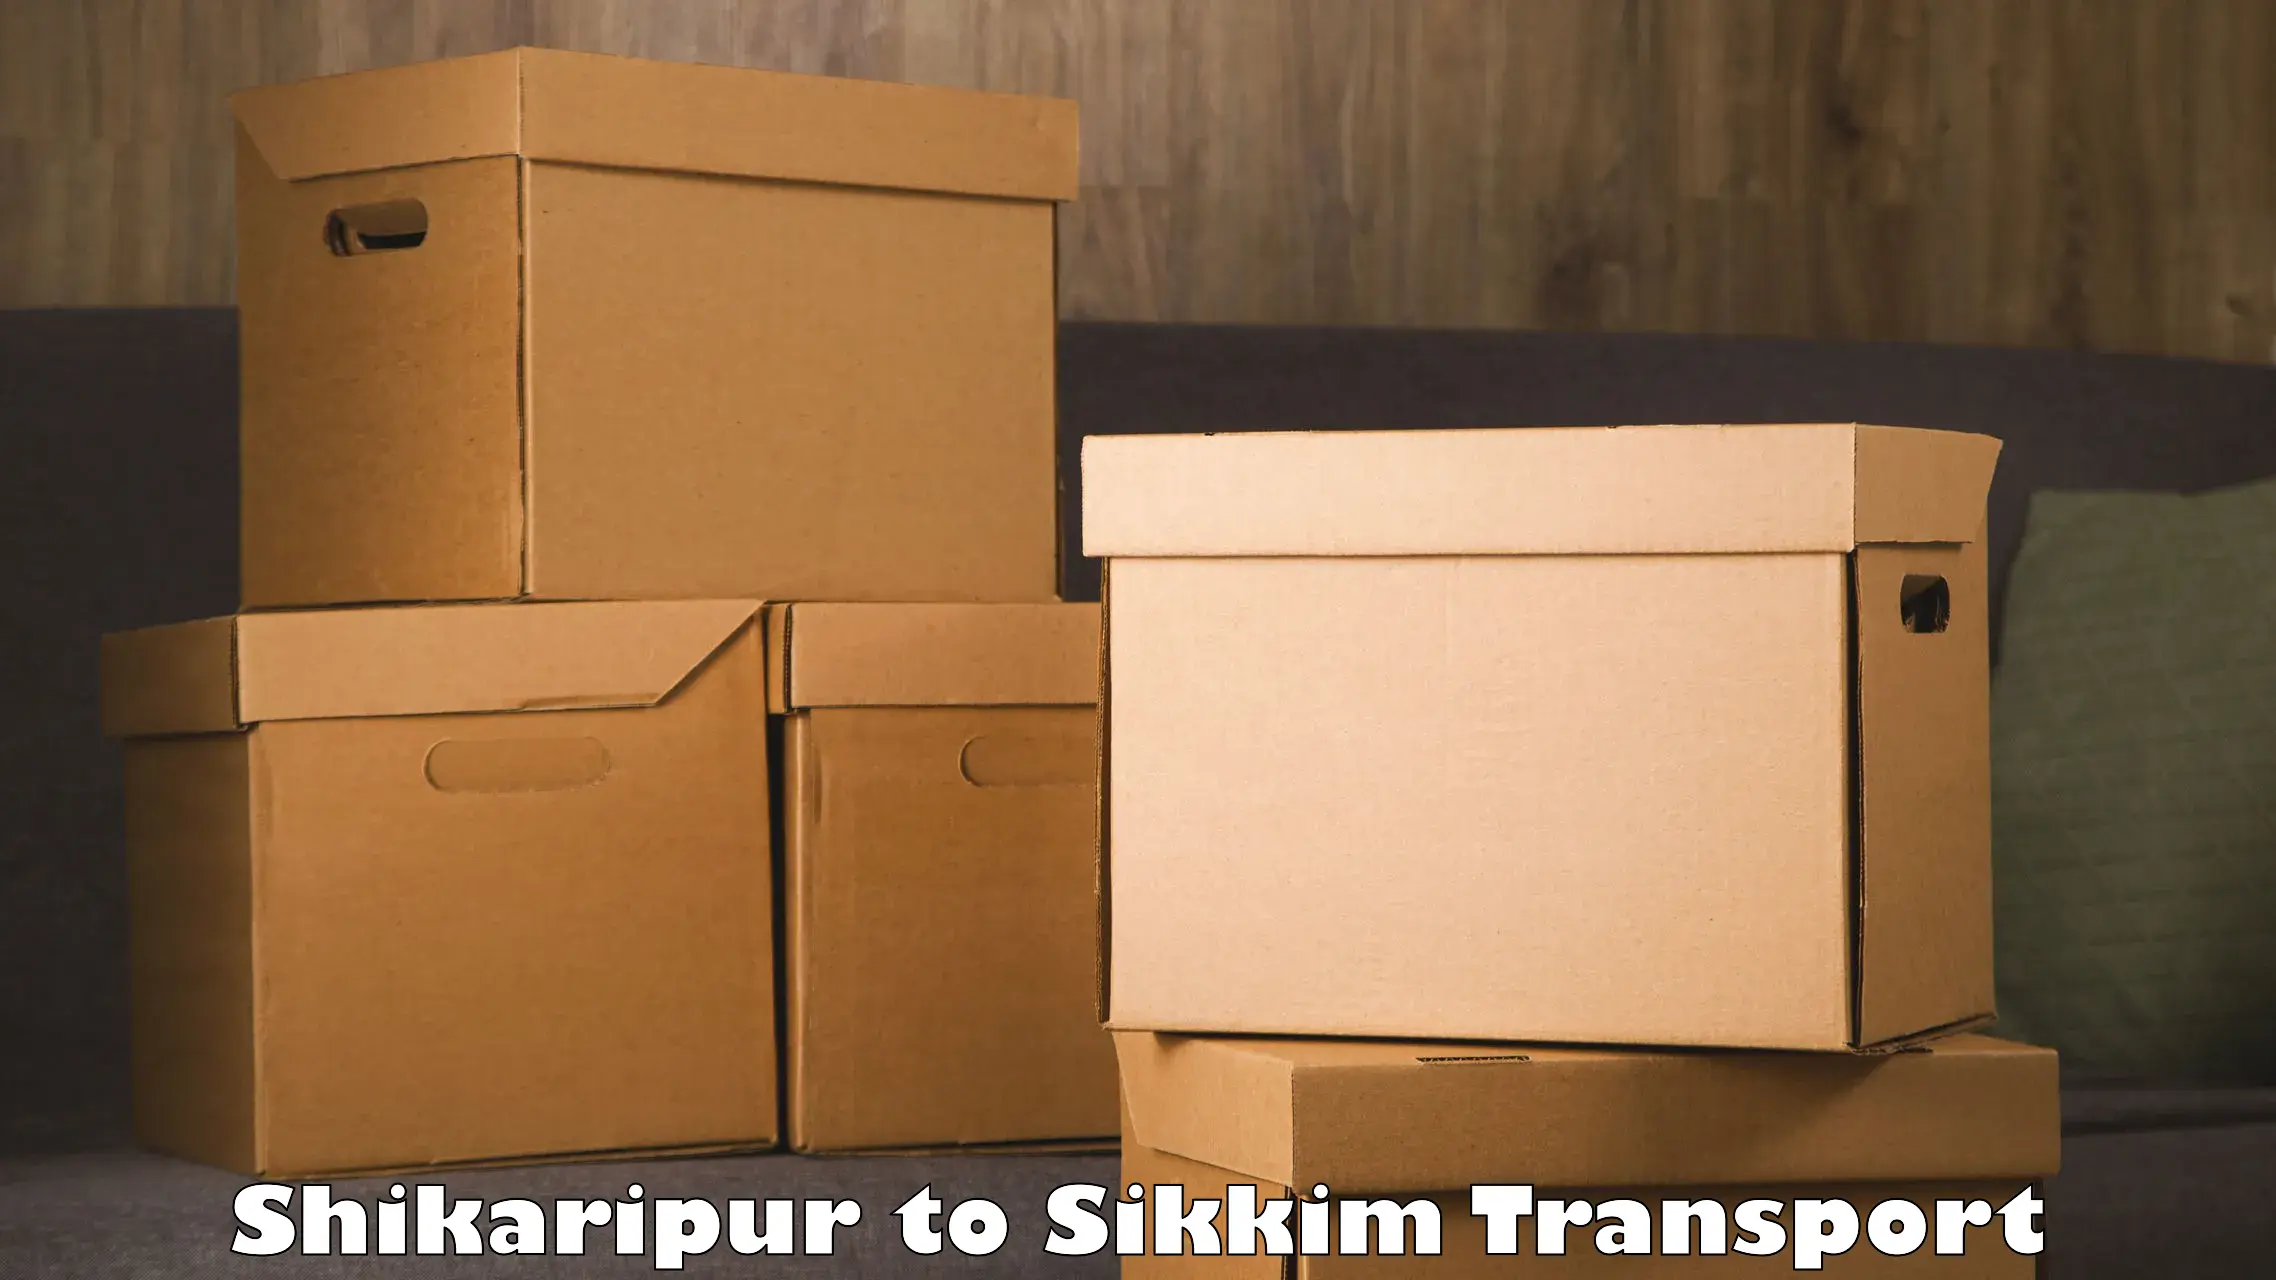 Shipping partner Shikaripur to Sikkim